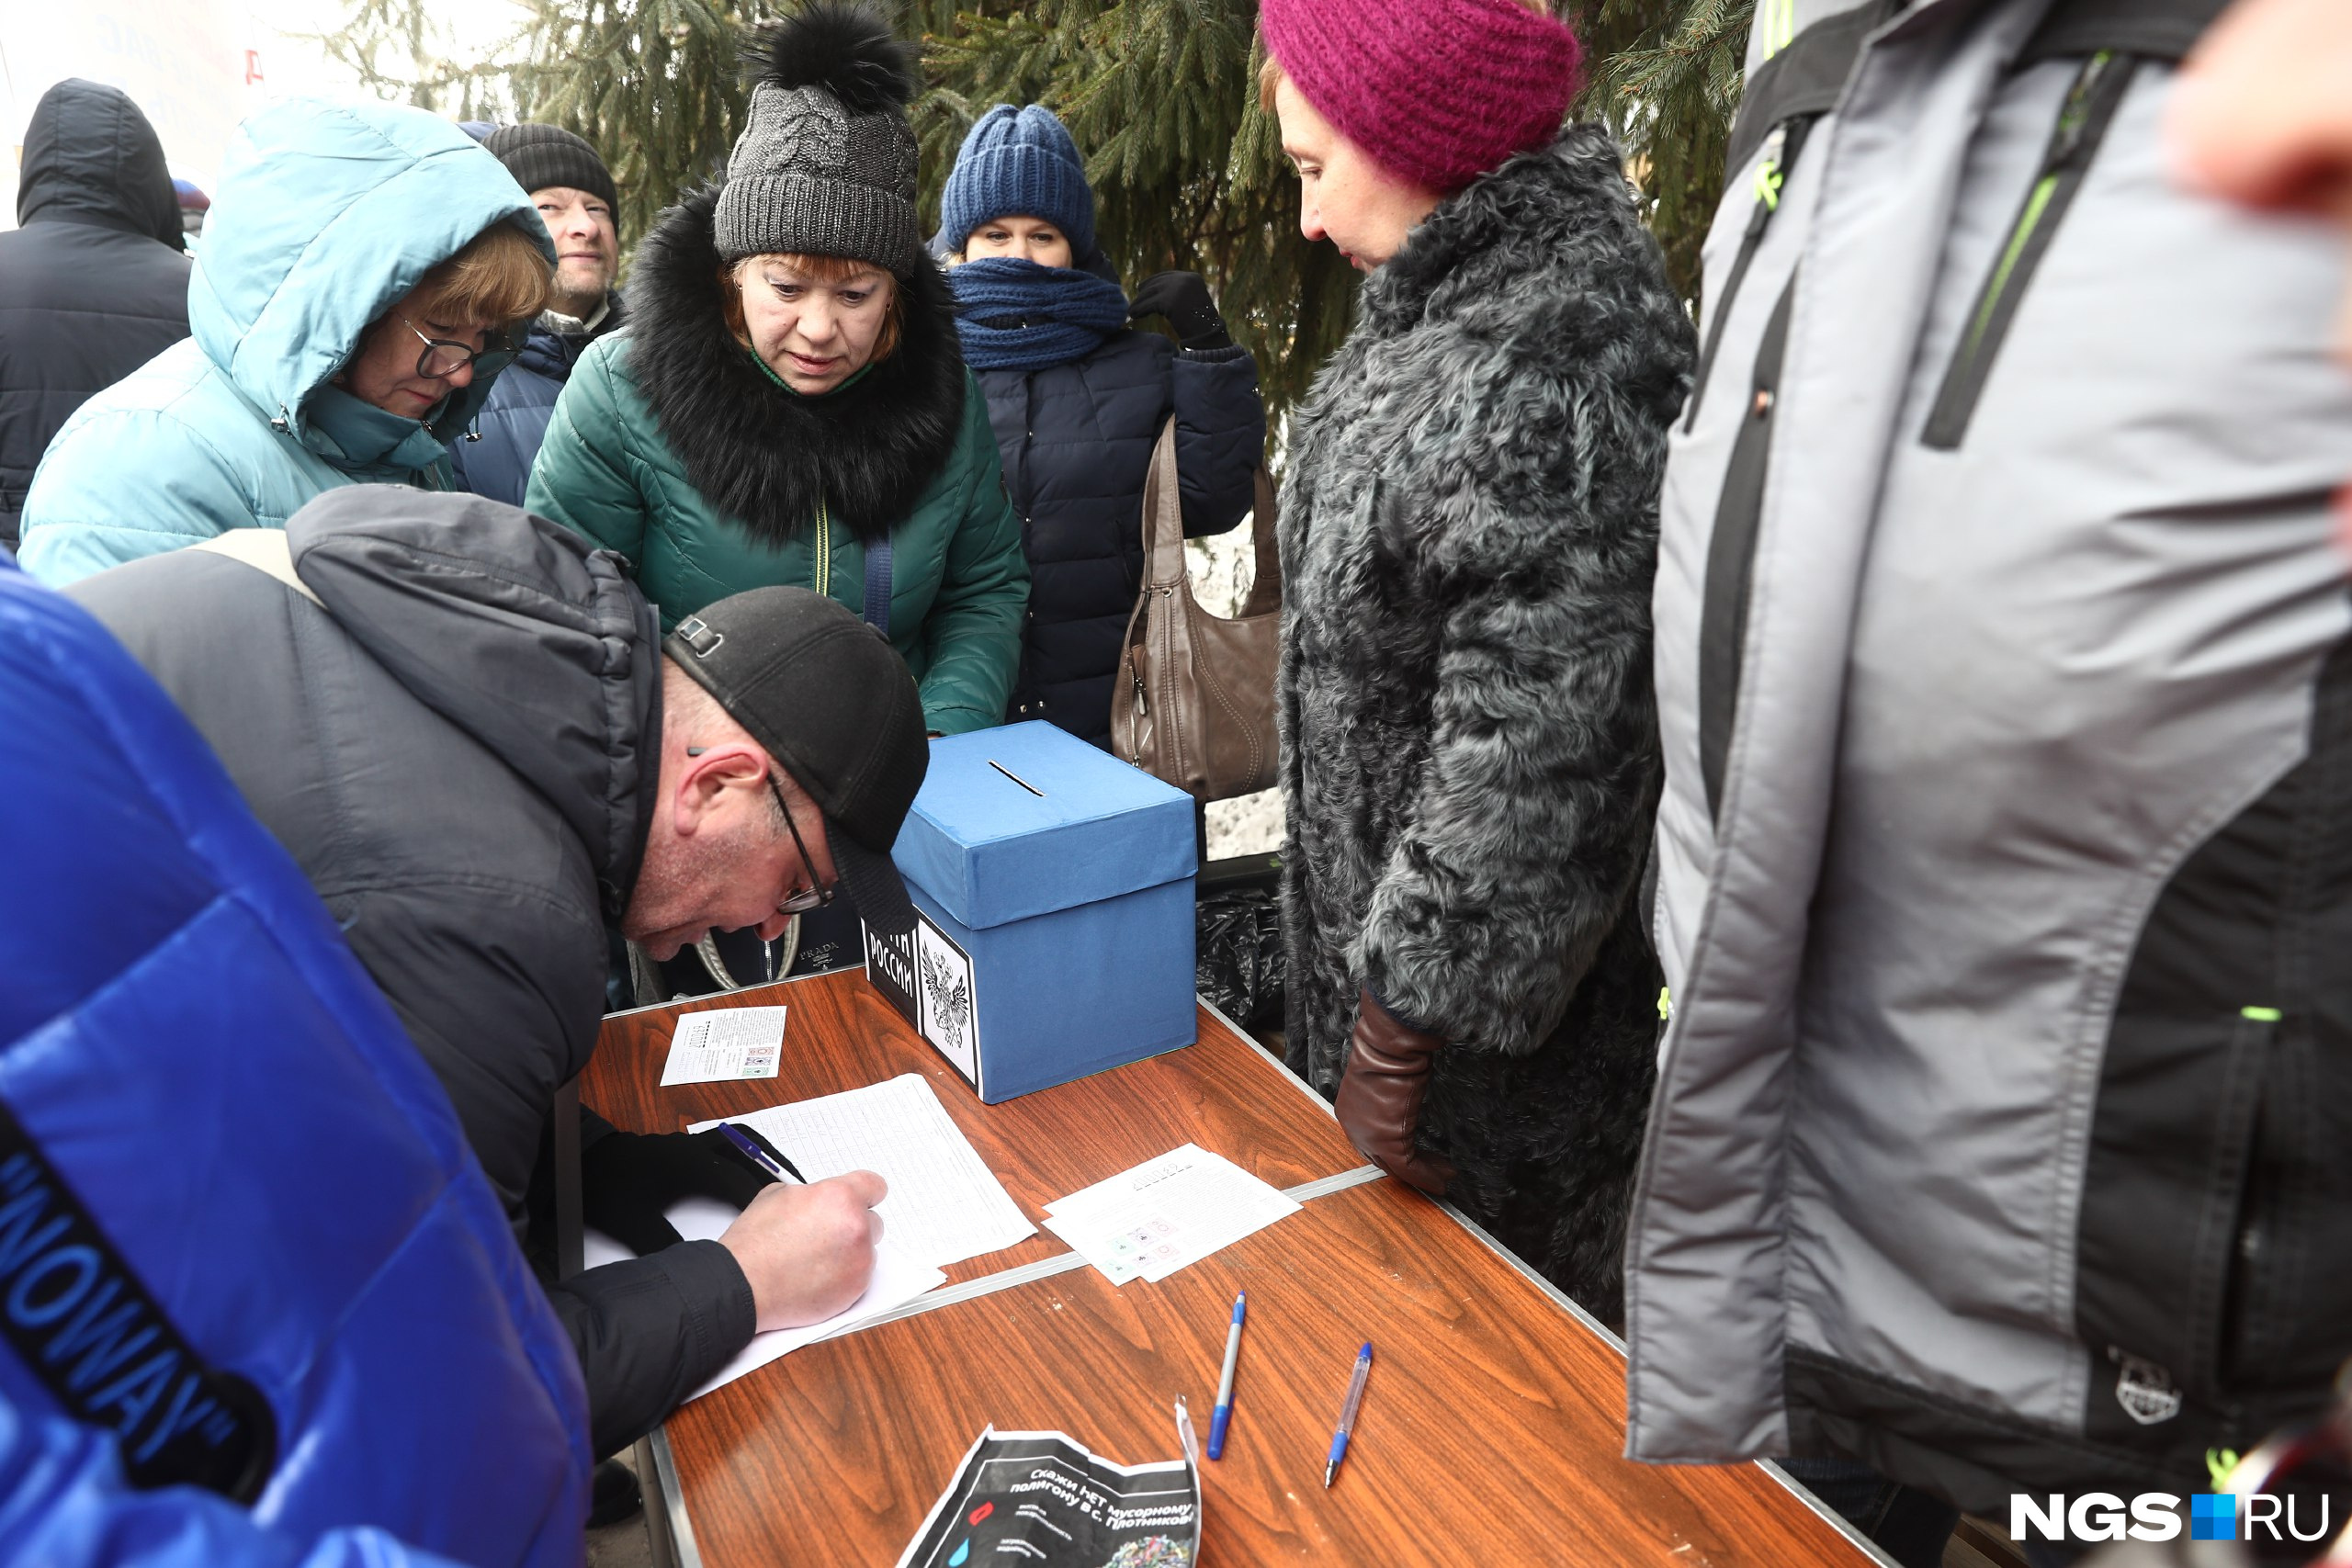 Участники митинга подписали открытки с обращениями для губернатора Новосибирской области